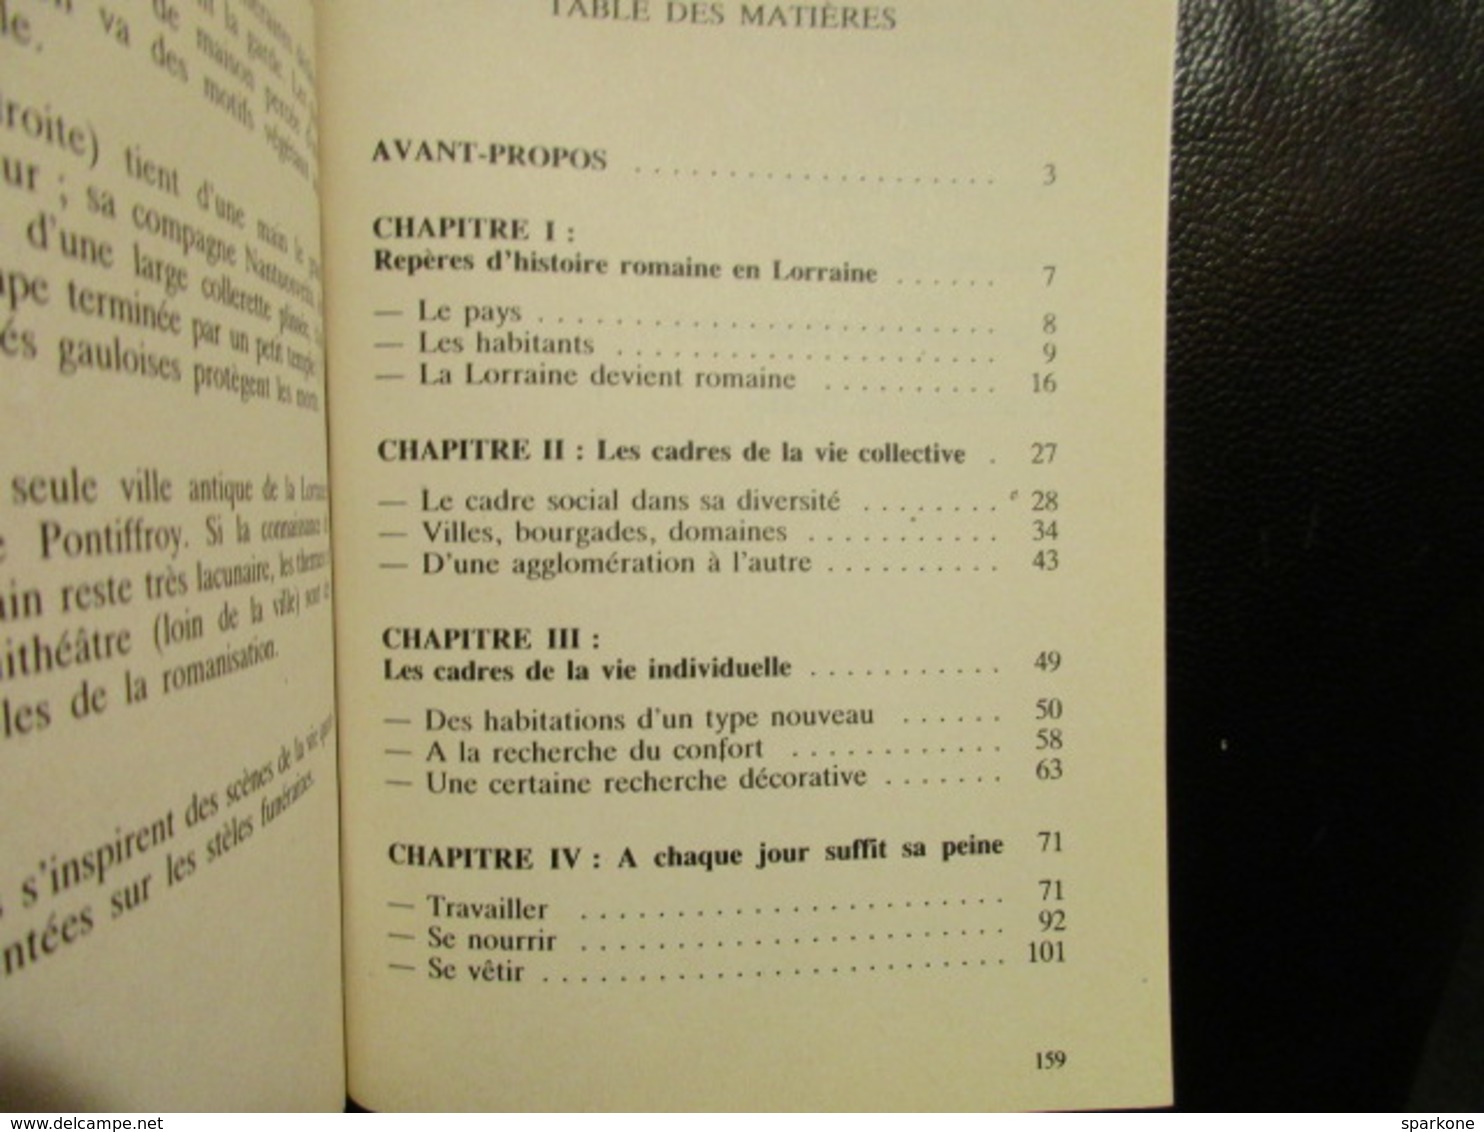 Vivre En Lorraine Gallo-Romaine (Marie-Jeanne Demarolle) éditions Presses Universitaires De Nancy De 1986 - Lorraine - Vosges